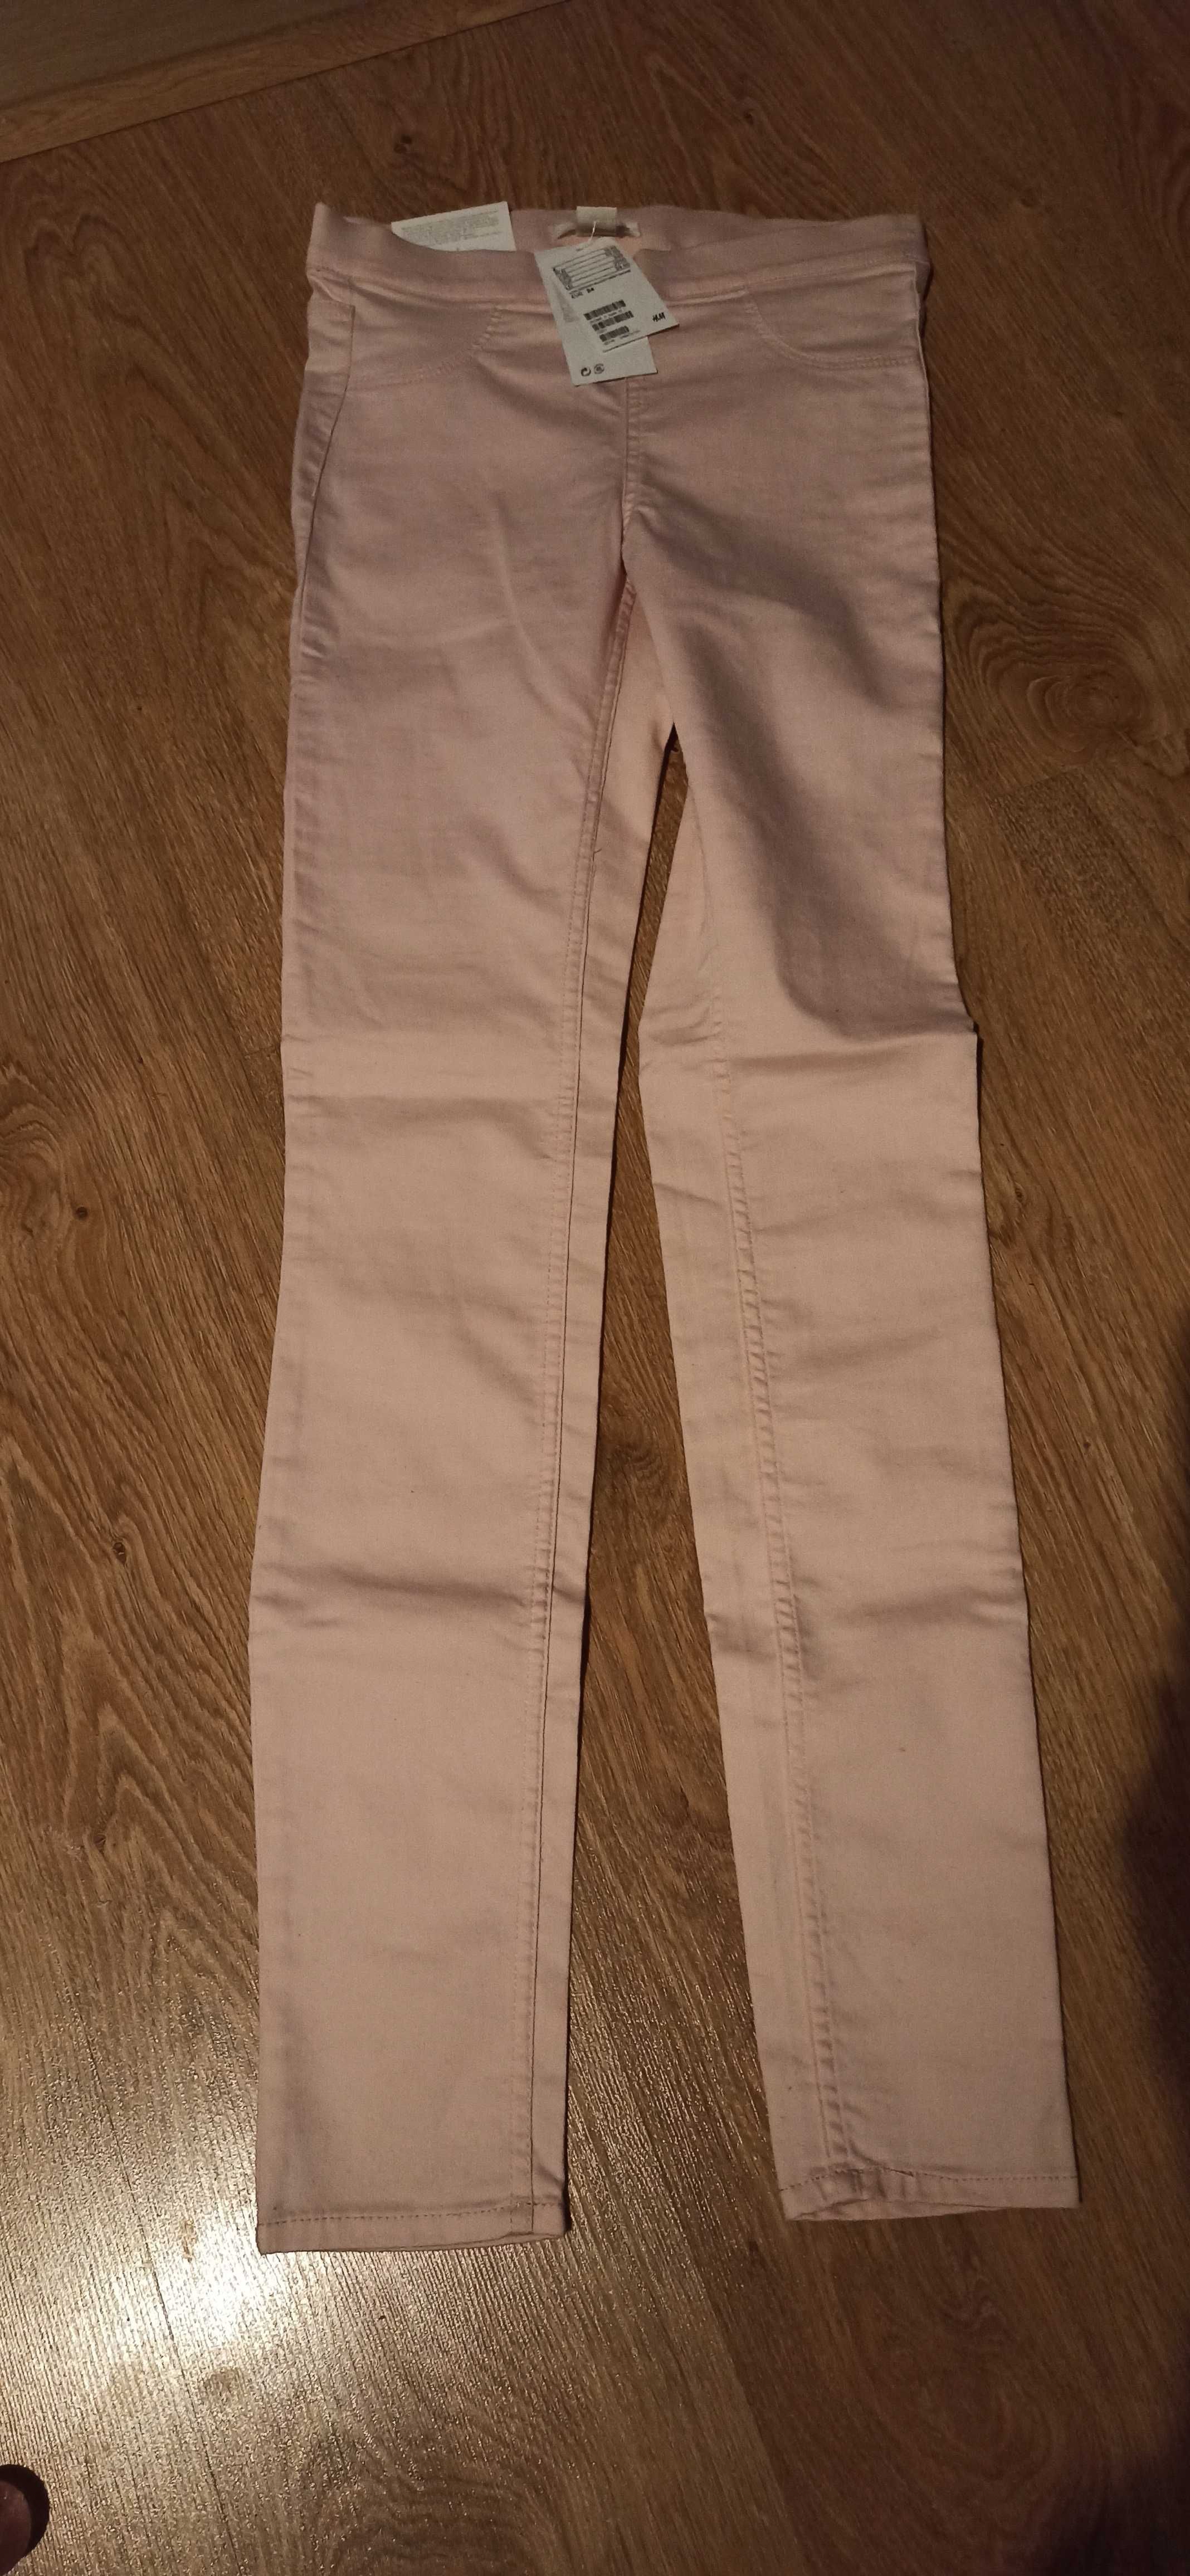 Spodnie H&M skinny super stretch rozmiar 34